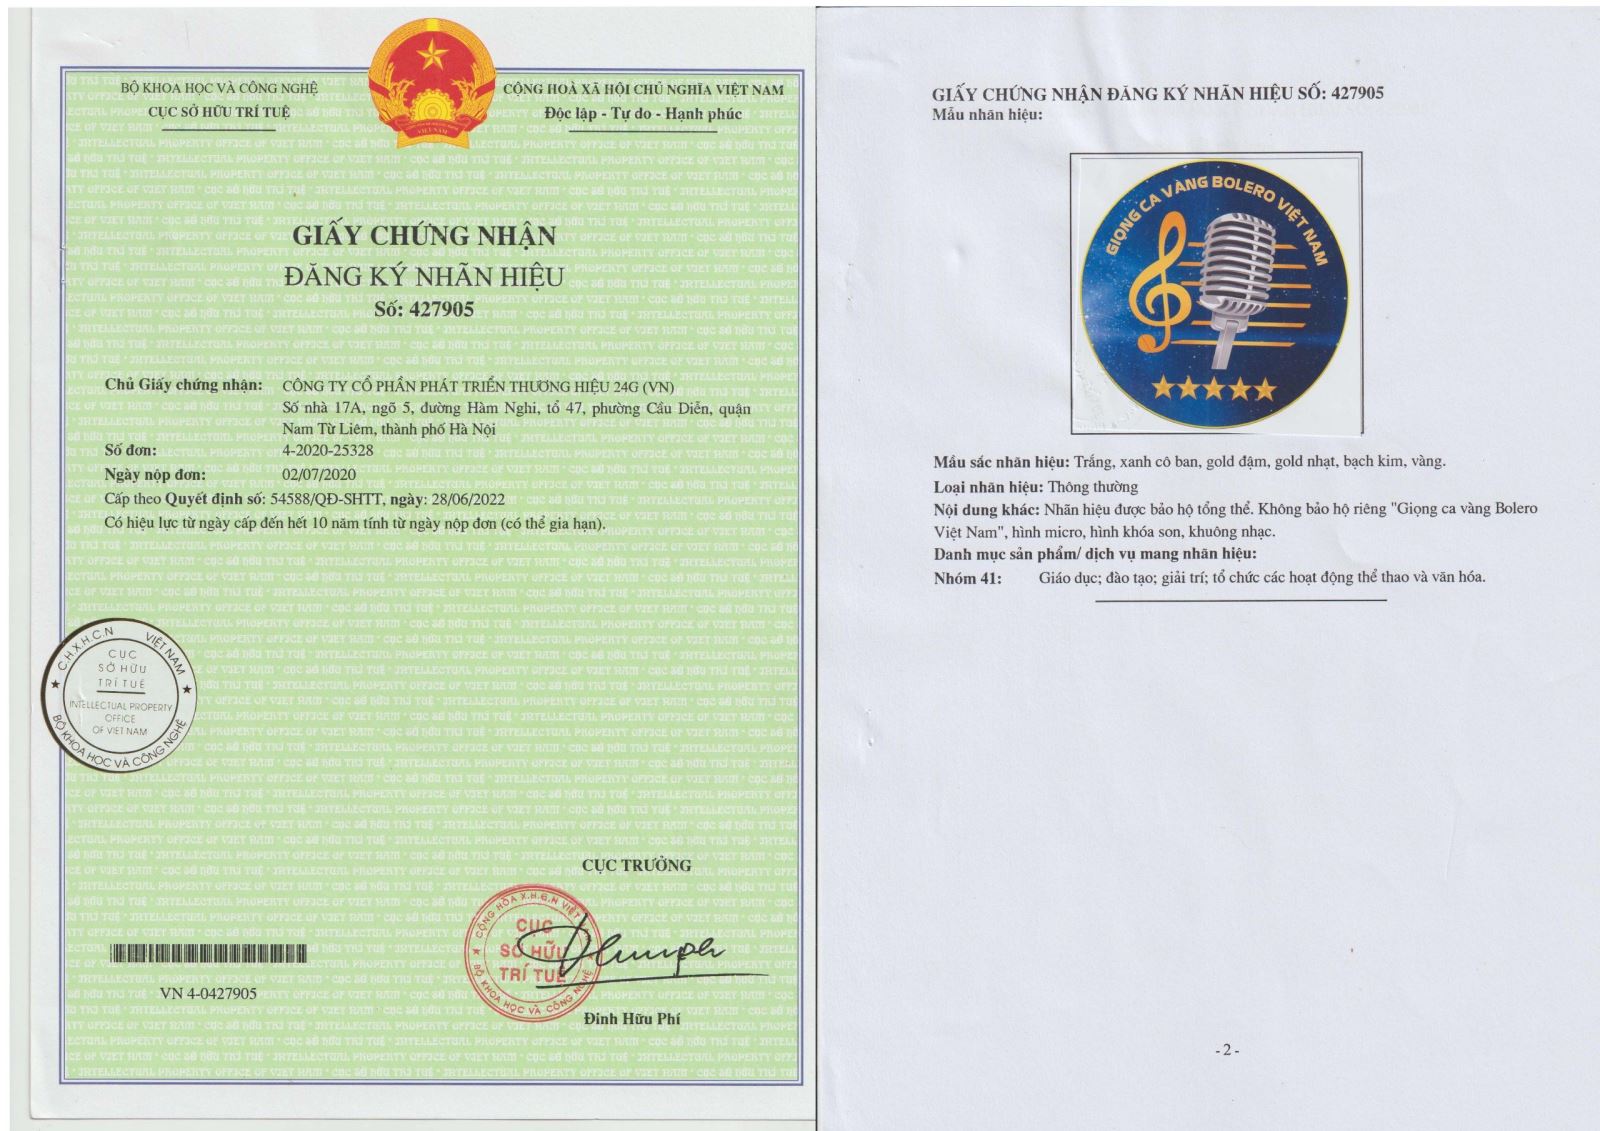 Trung tâm Giọng ca Vàng Bolero Việt Nam đơn vị có pháp lý duy nhất hiện nay về dòng nhạc Bolero